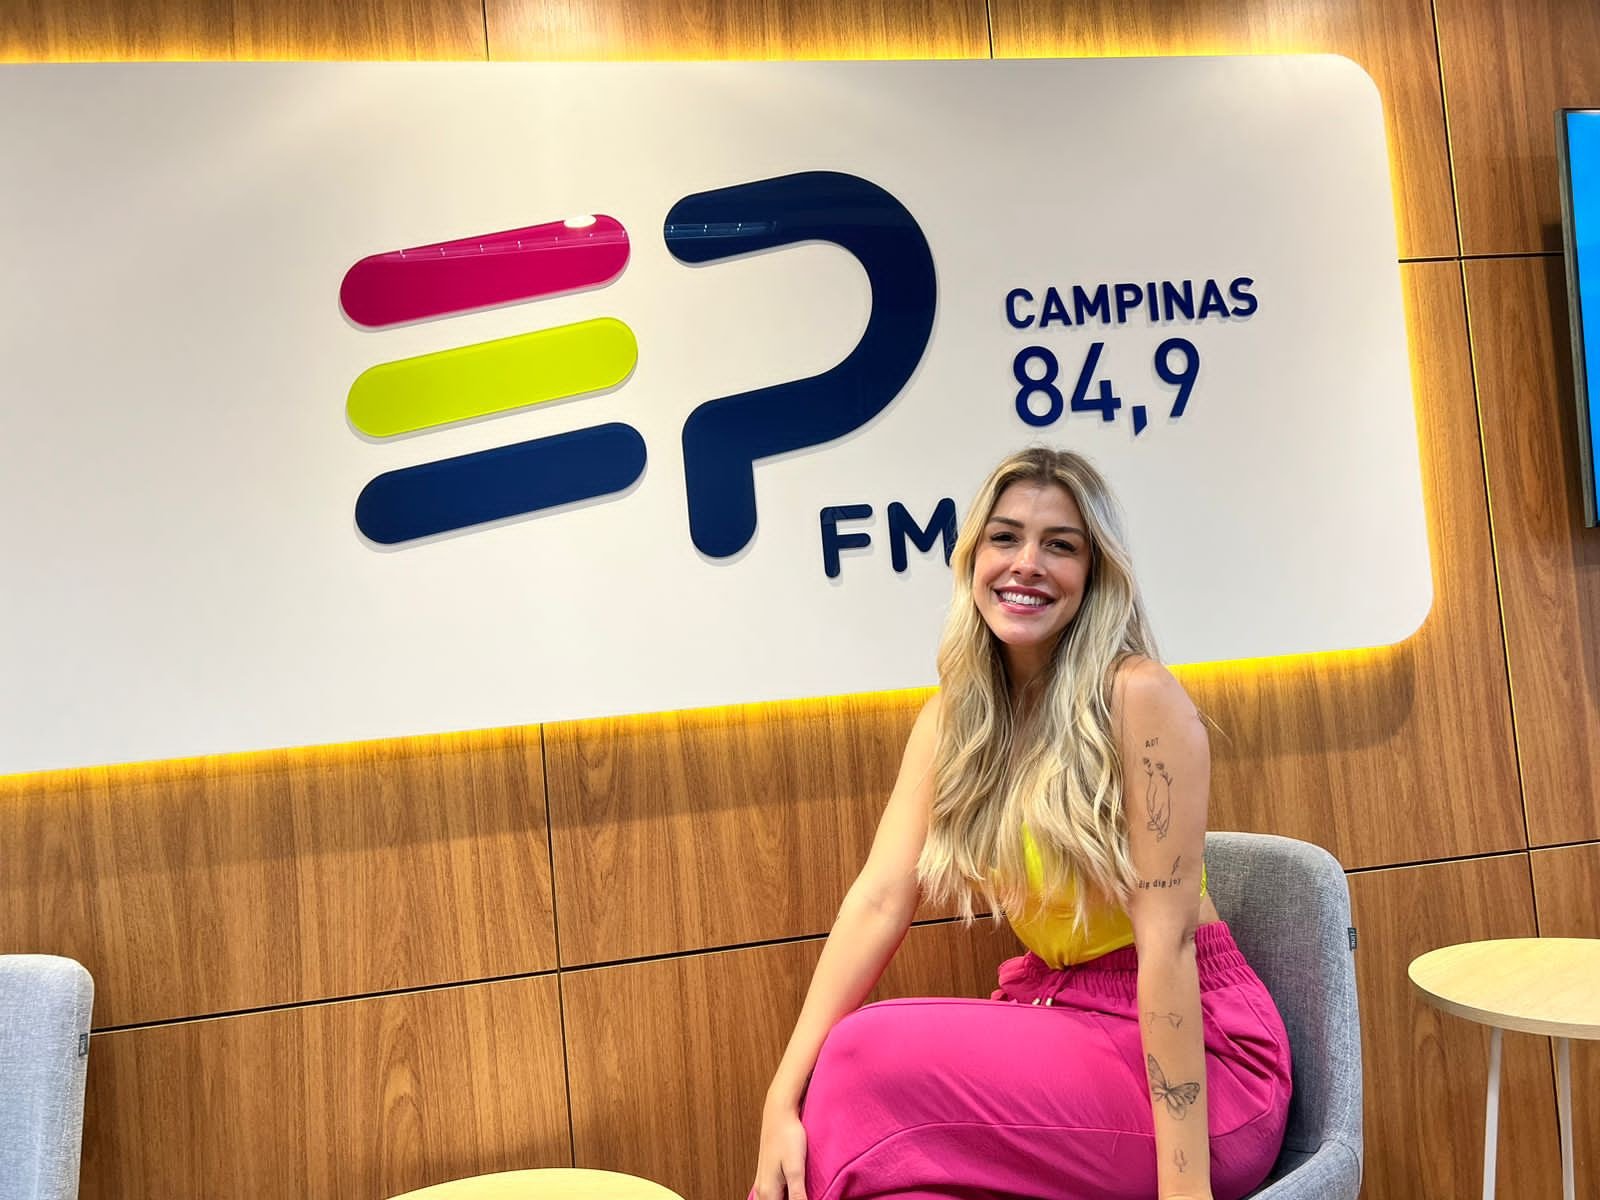 Larissa Cavalcante chega à equipe da emissora EP FM